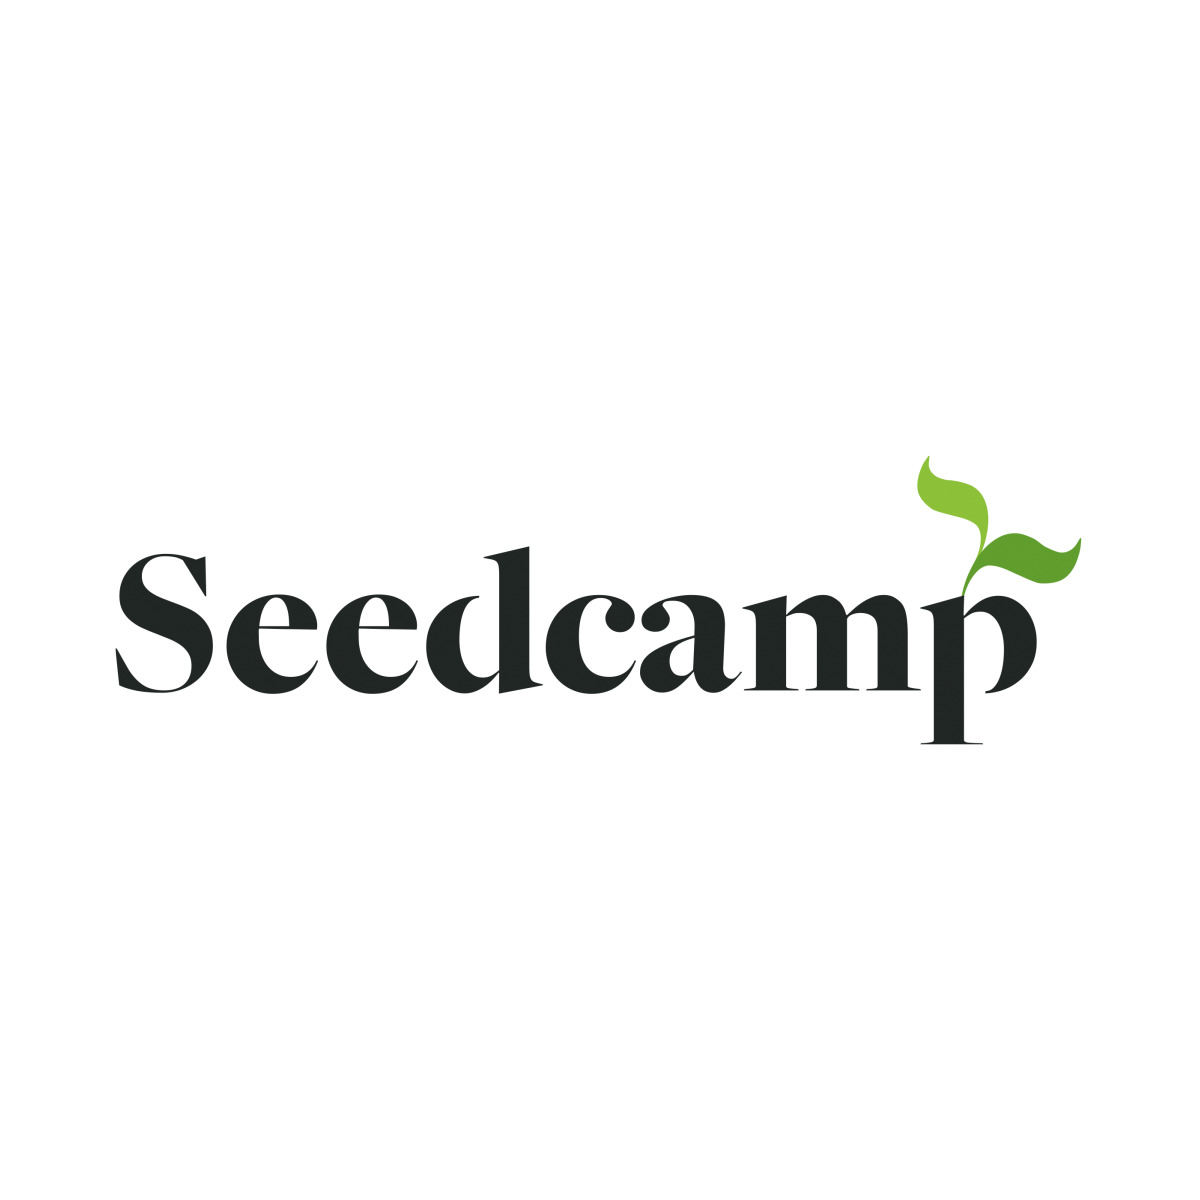 (c) Seedcamp.com